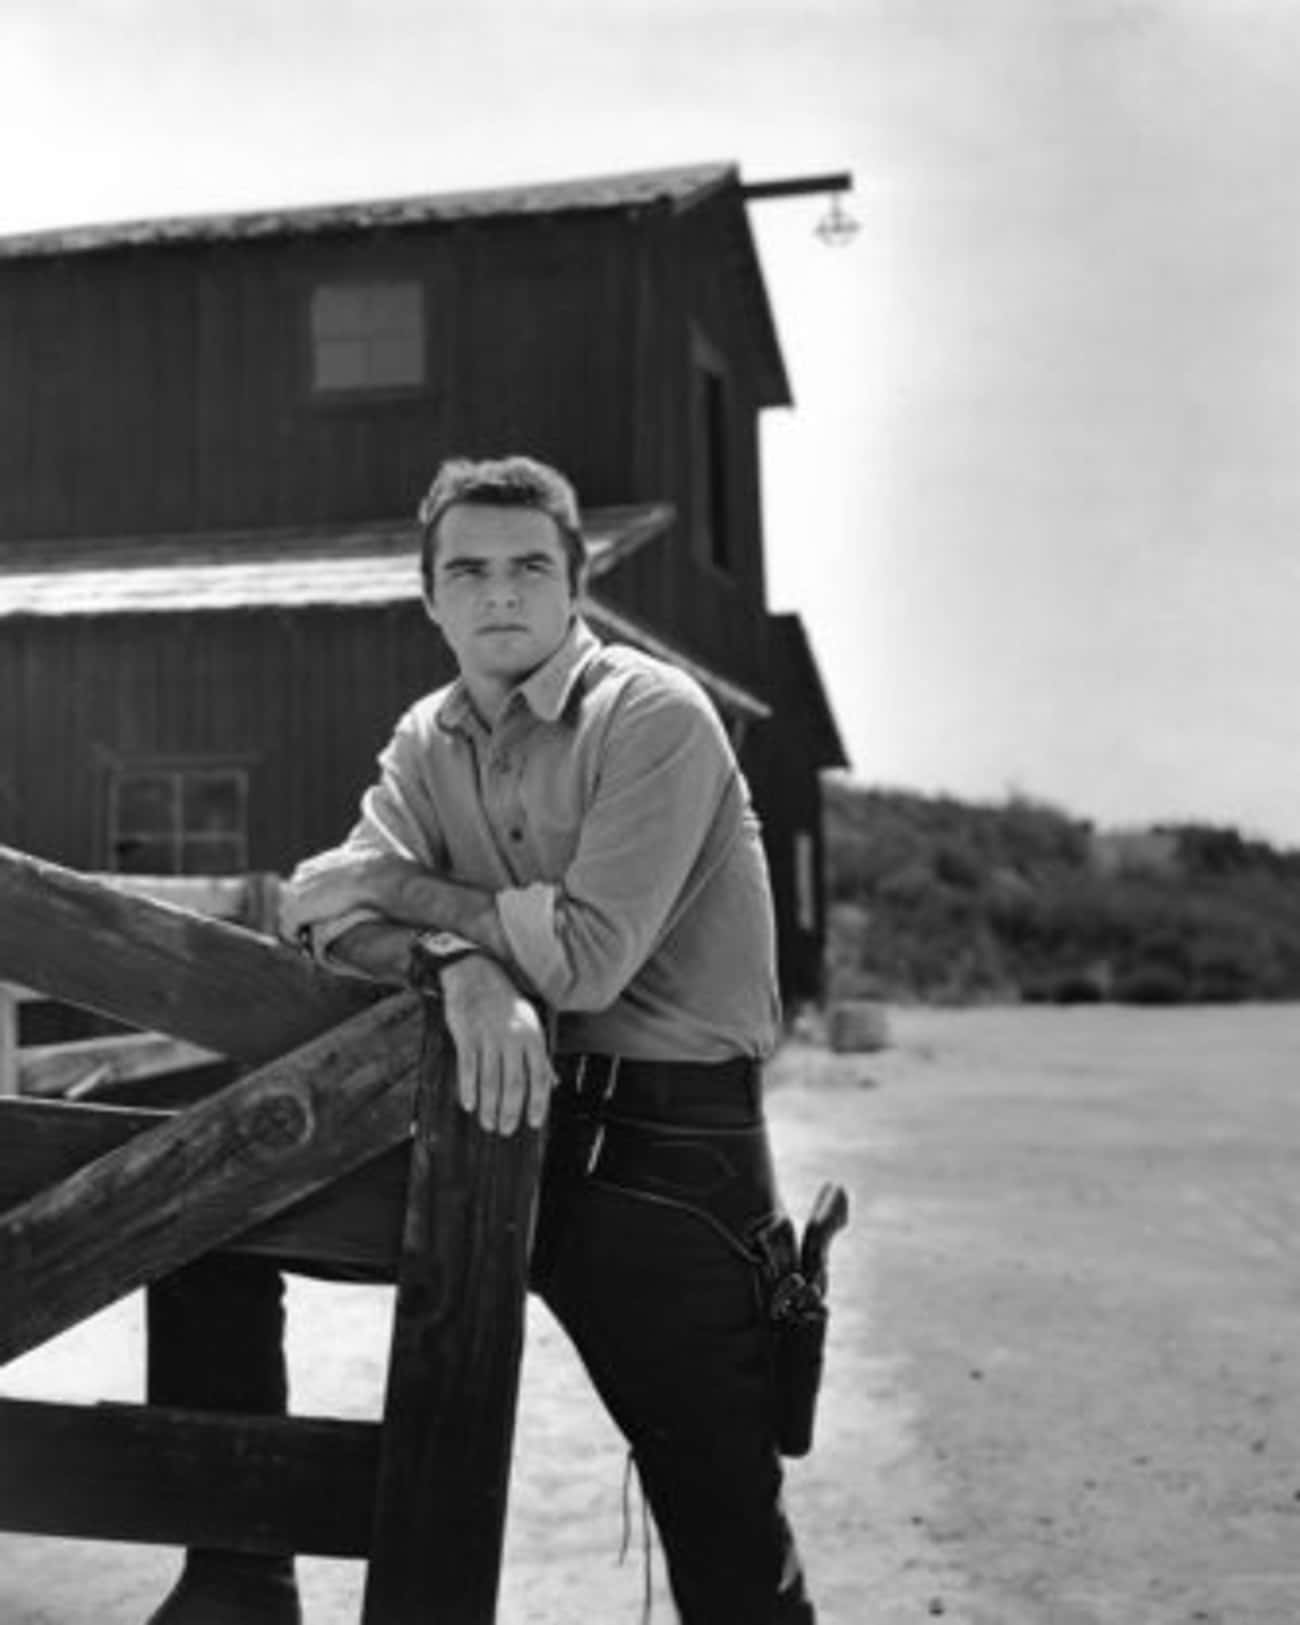 Young Burt Reynolds in Western Attire